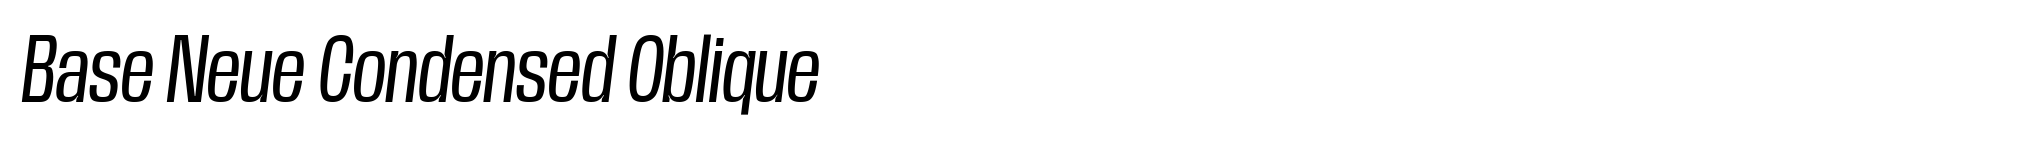 Base Neue Condensed Oblique image